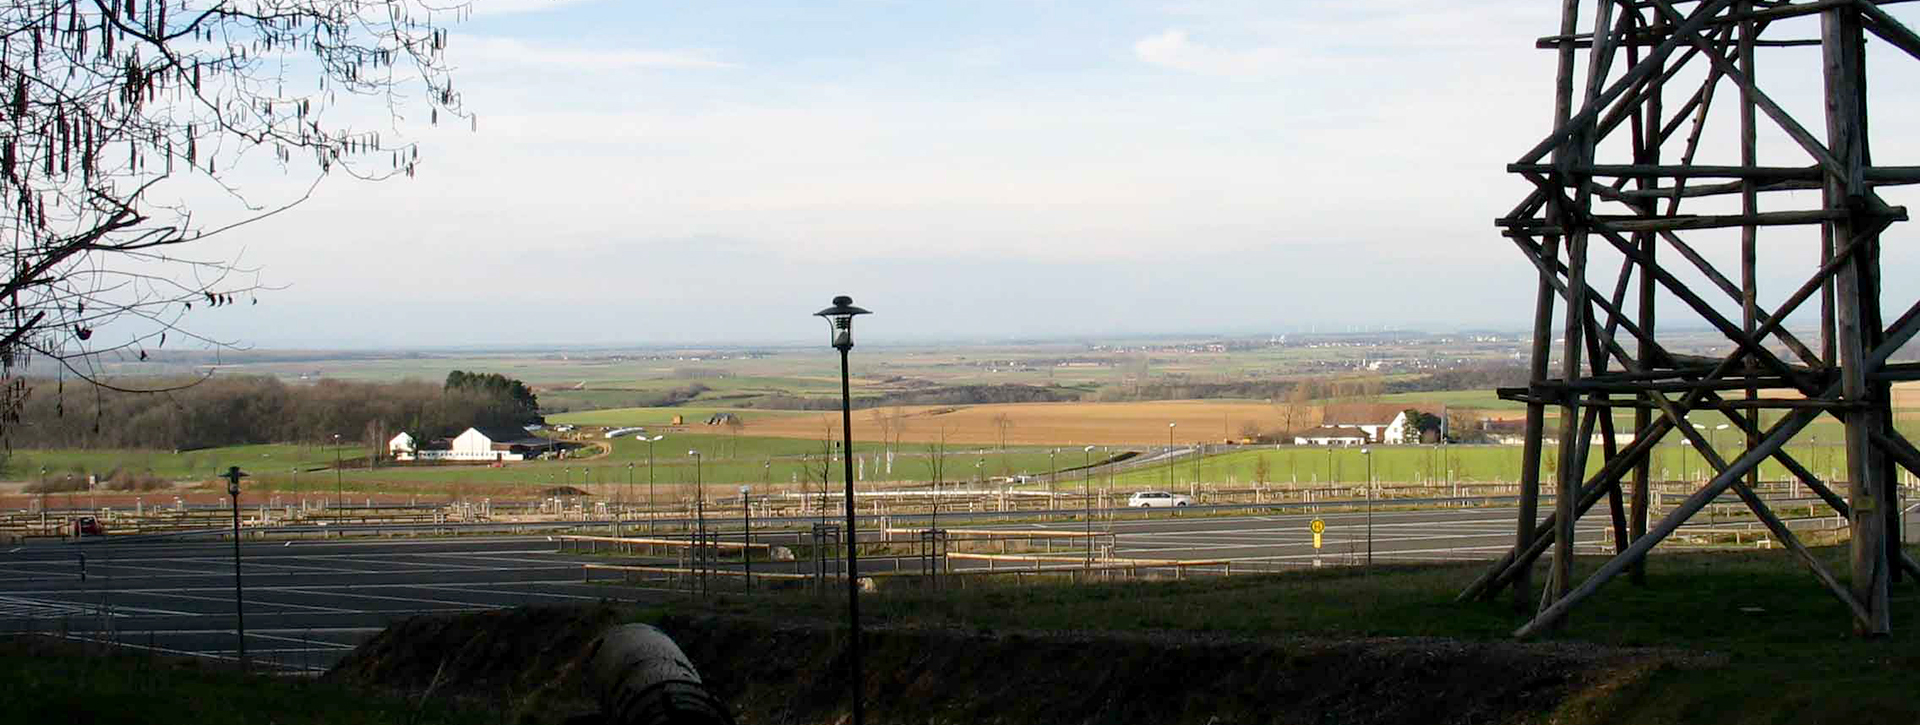 Blick über den Parkplatz auf die Felder, rechts im Bild steht der Trigonometrische Turm